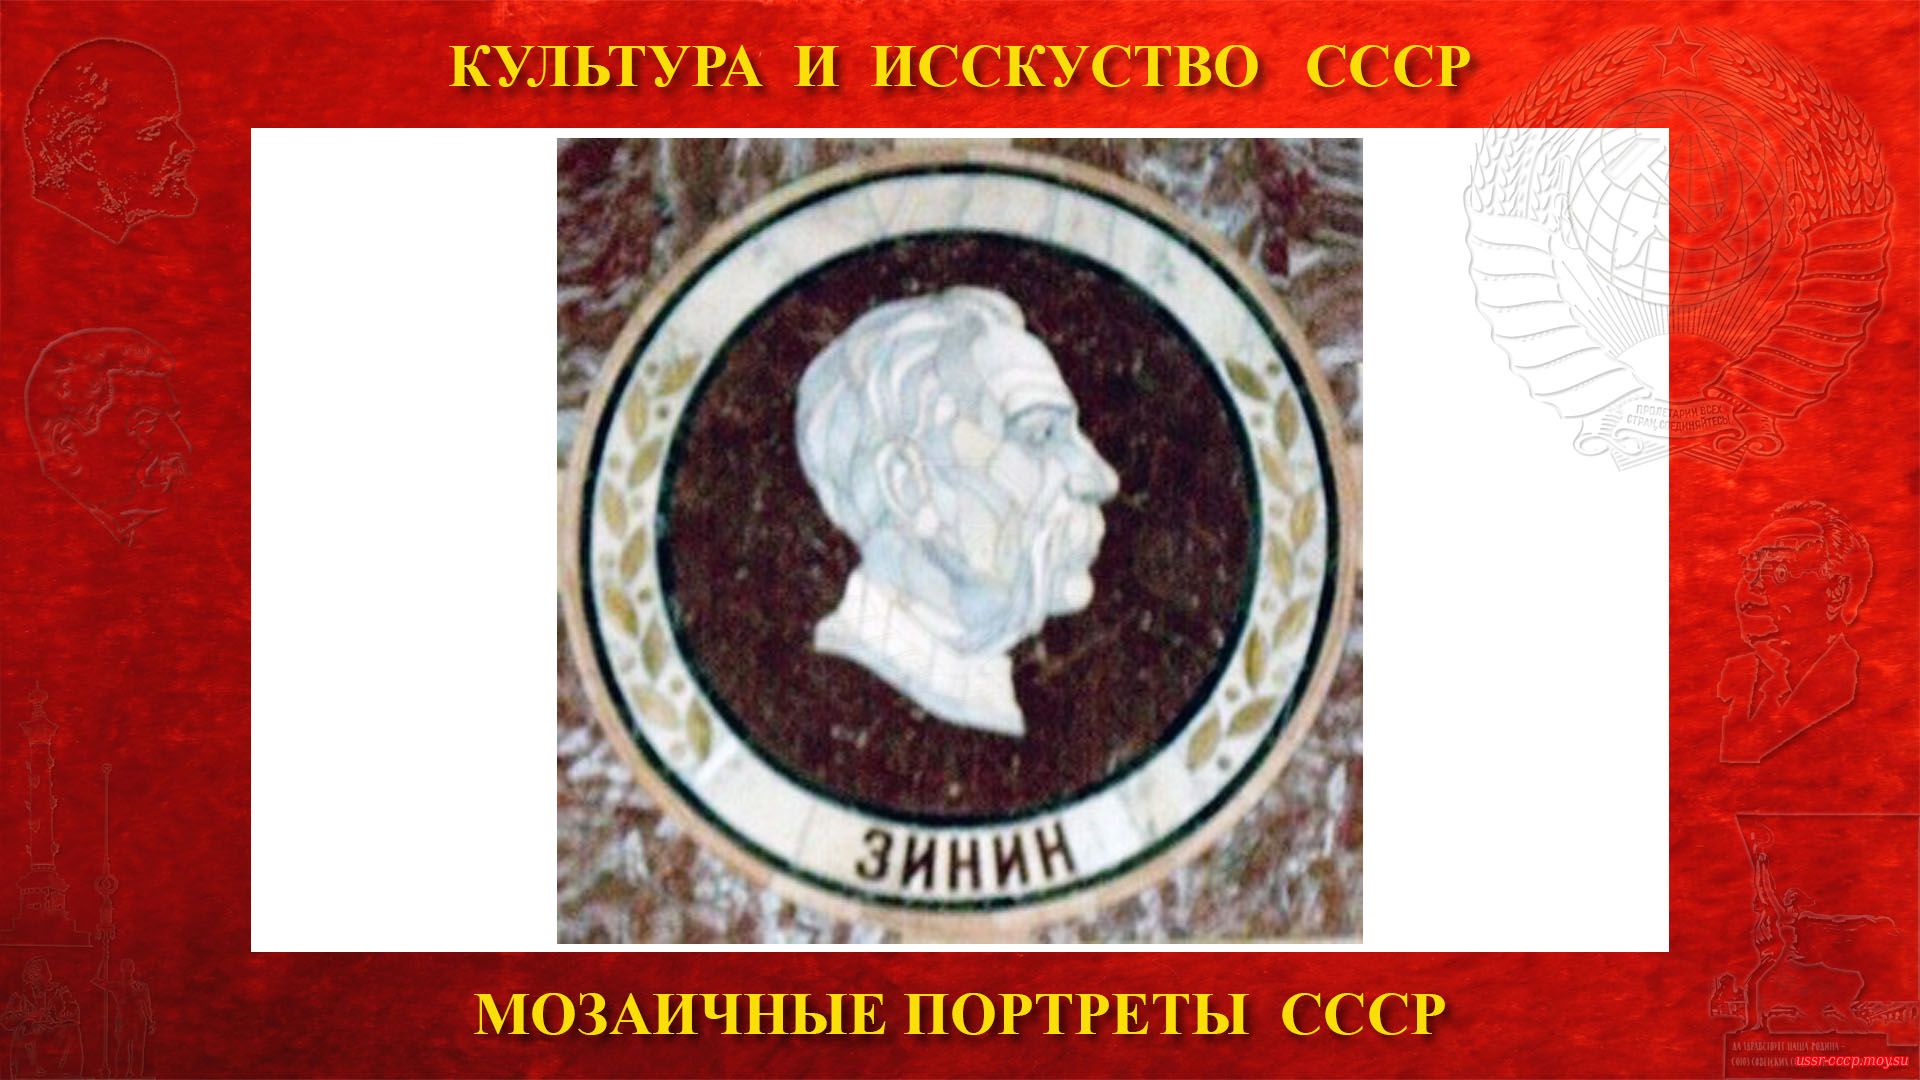 Мозаичный портрет Зинину Н.Н. на Ленинских горах в ГЗ МГУ (Москва 1953) (повествование)